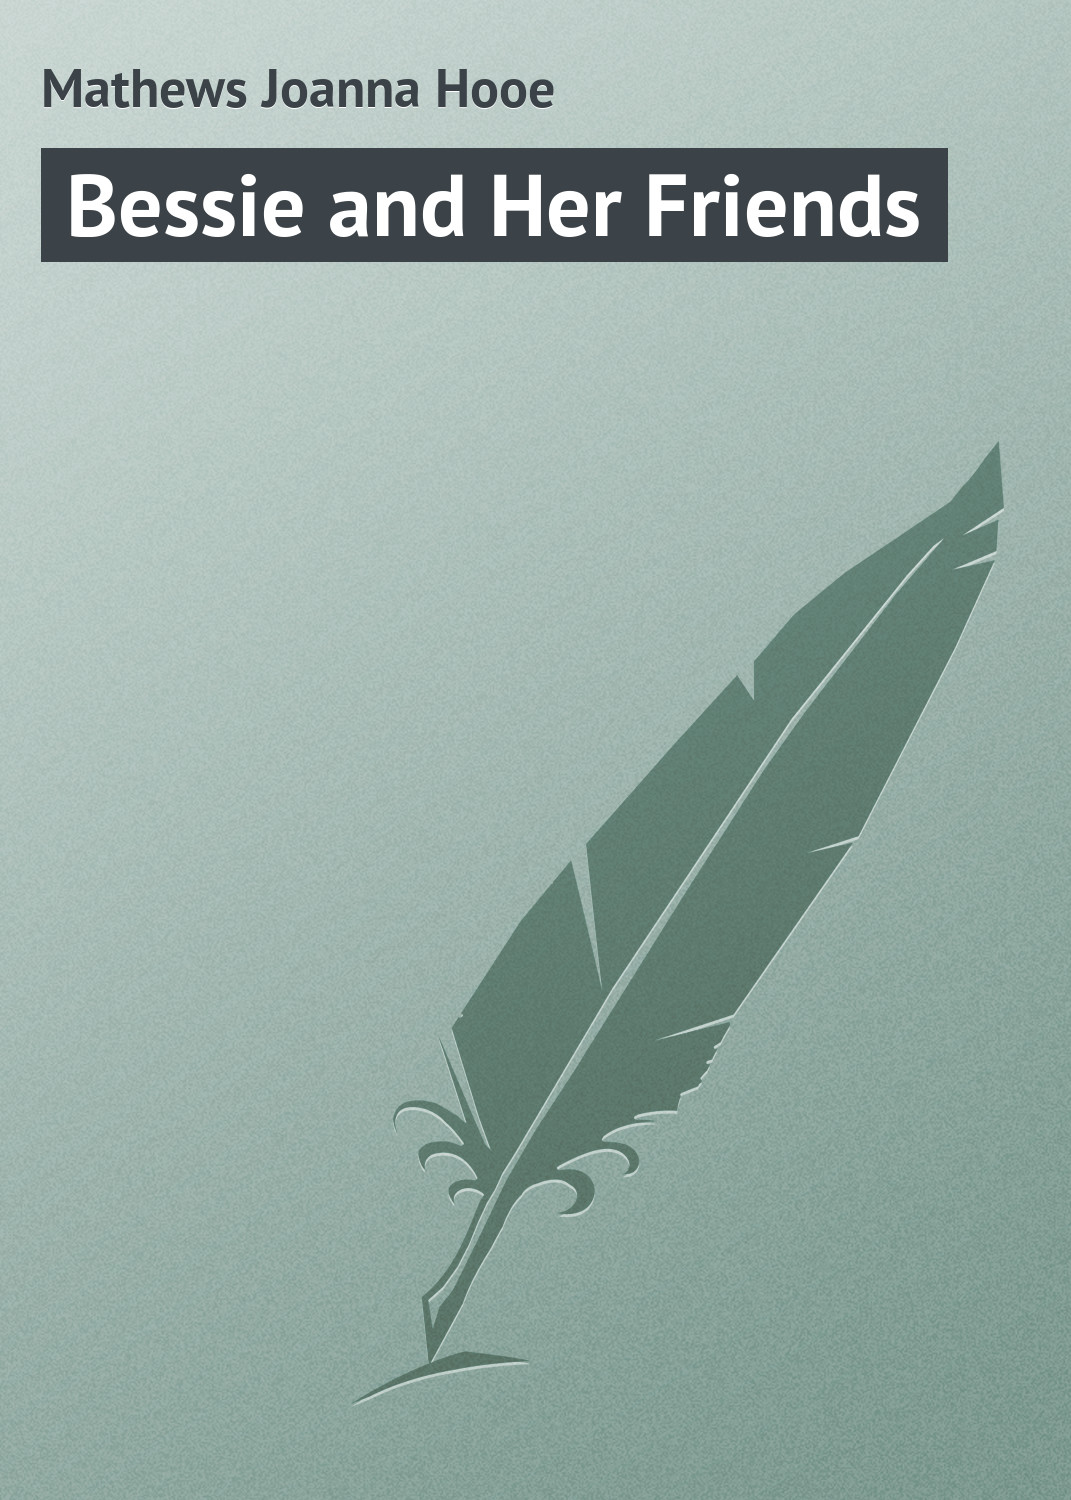 Книга Bessie and Her Friends из серии , созданная Joanna Mathews, может относится к жанру Зарубежная классика. Стоимость электронной книги Bessie and Her Friends с идентификатором 23164891 составляет 5.99 руб.